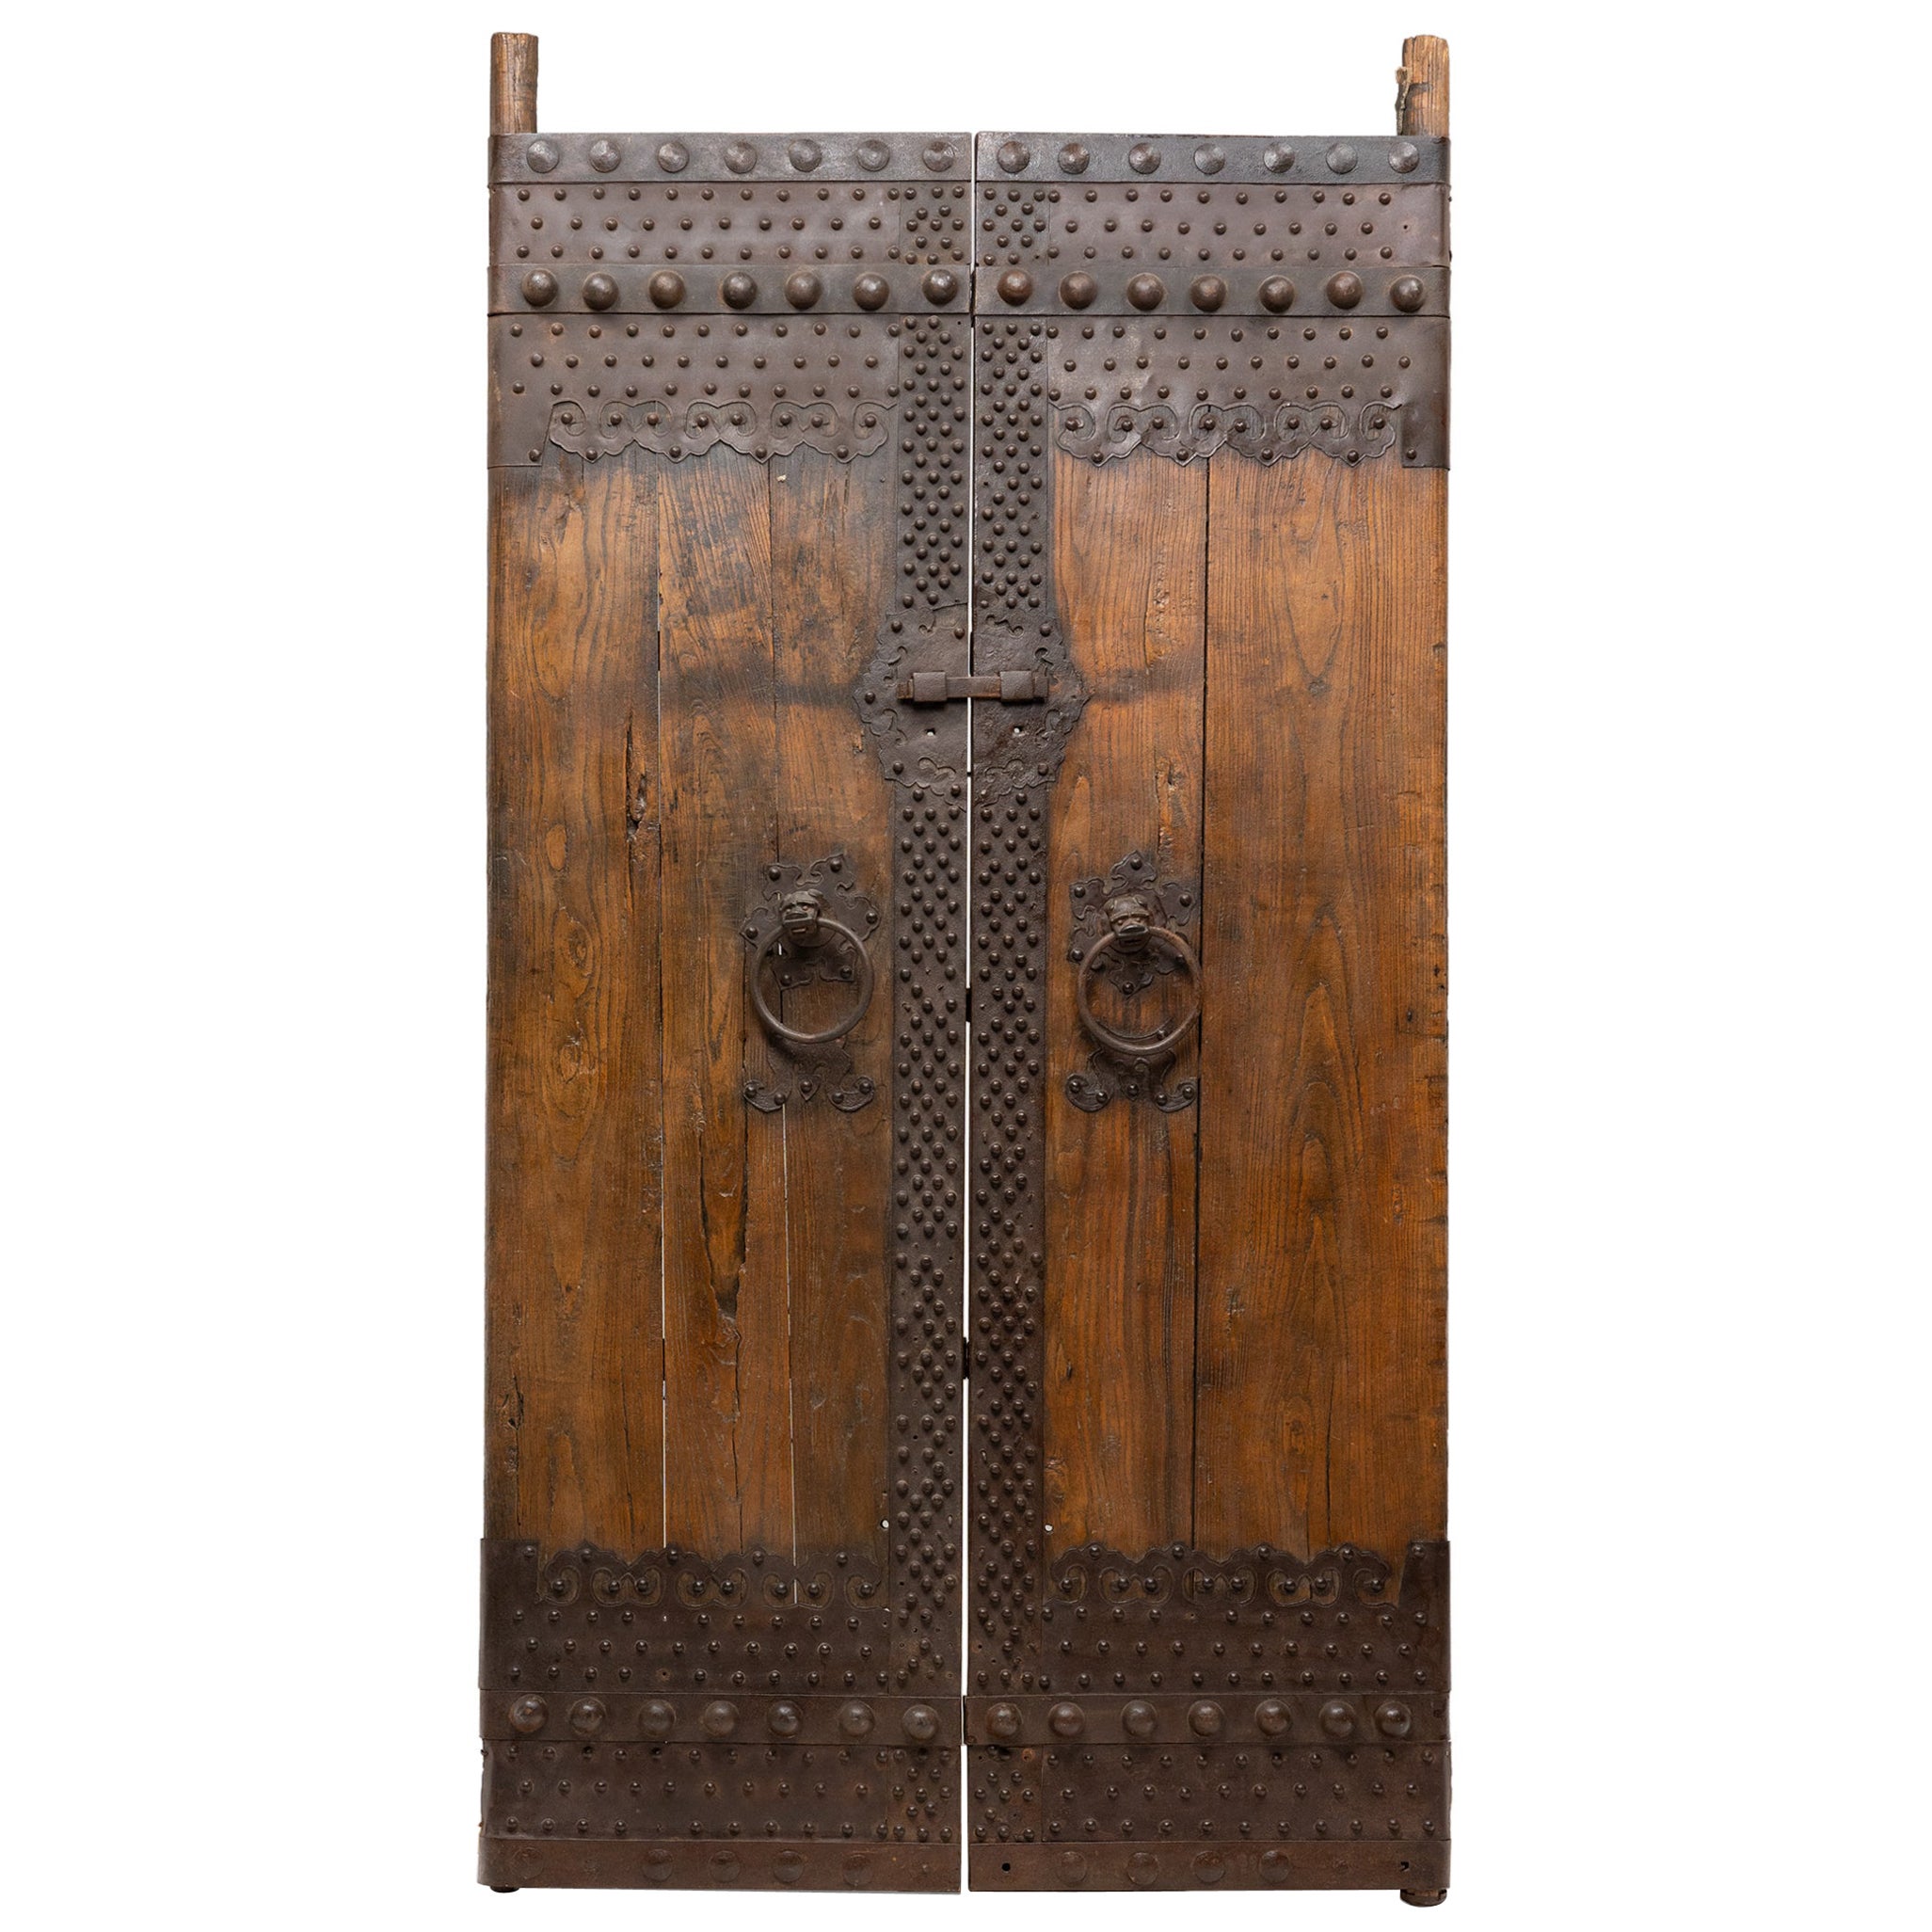 Pair of Chinese Iron Bound Courtyard Doors, c. 1850